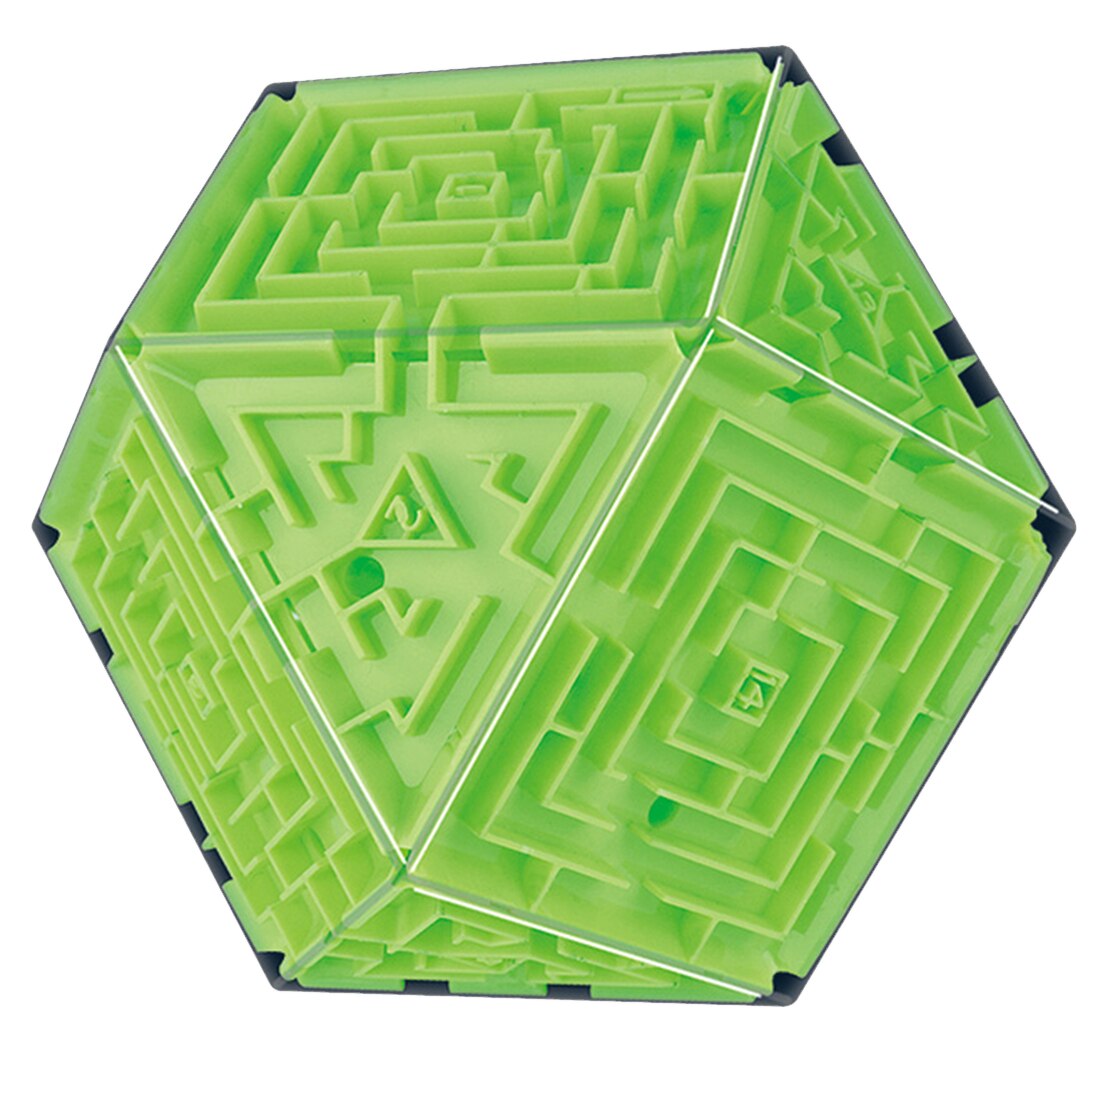 3d labyrint terning intelligent legetøj labyrint bold legetøj labyrint boldspil læring pædagogisk legetøj tetraeder kunst farverig l: Grøn